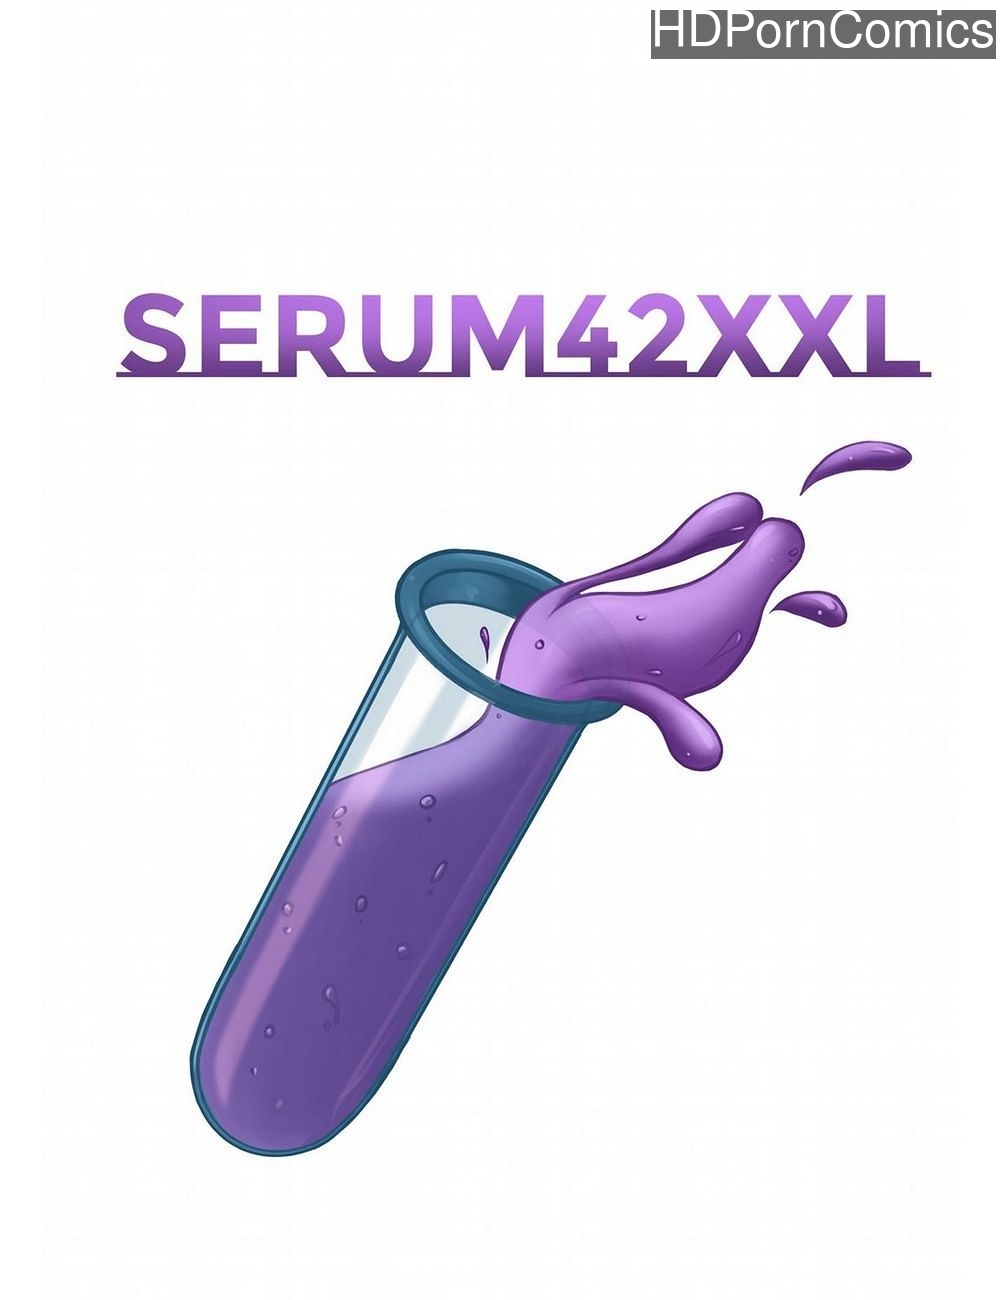 Surum Sex Video - Serum 42XXL 1 comic porn | HD Porn Comics